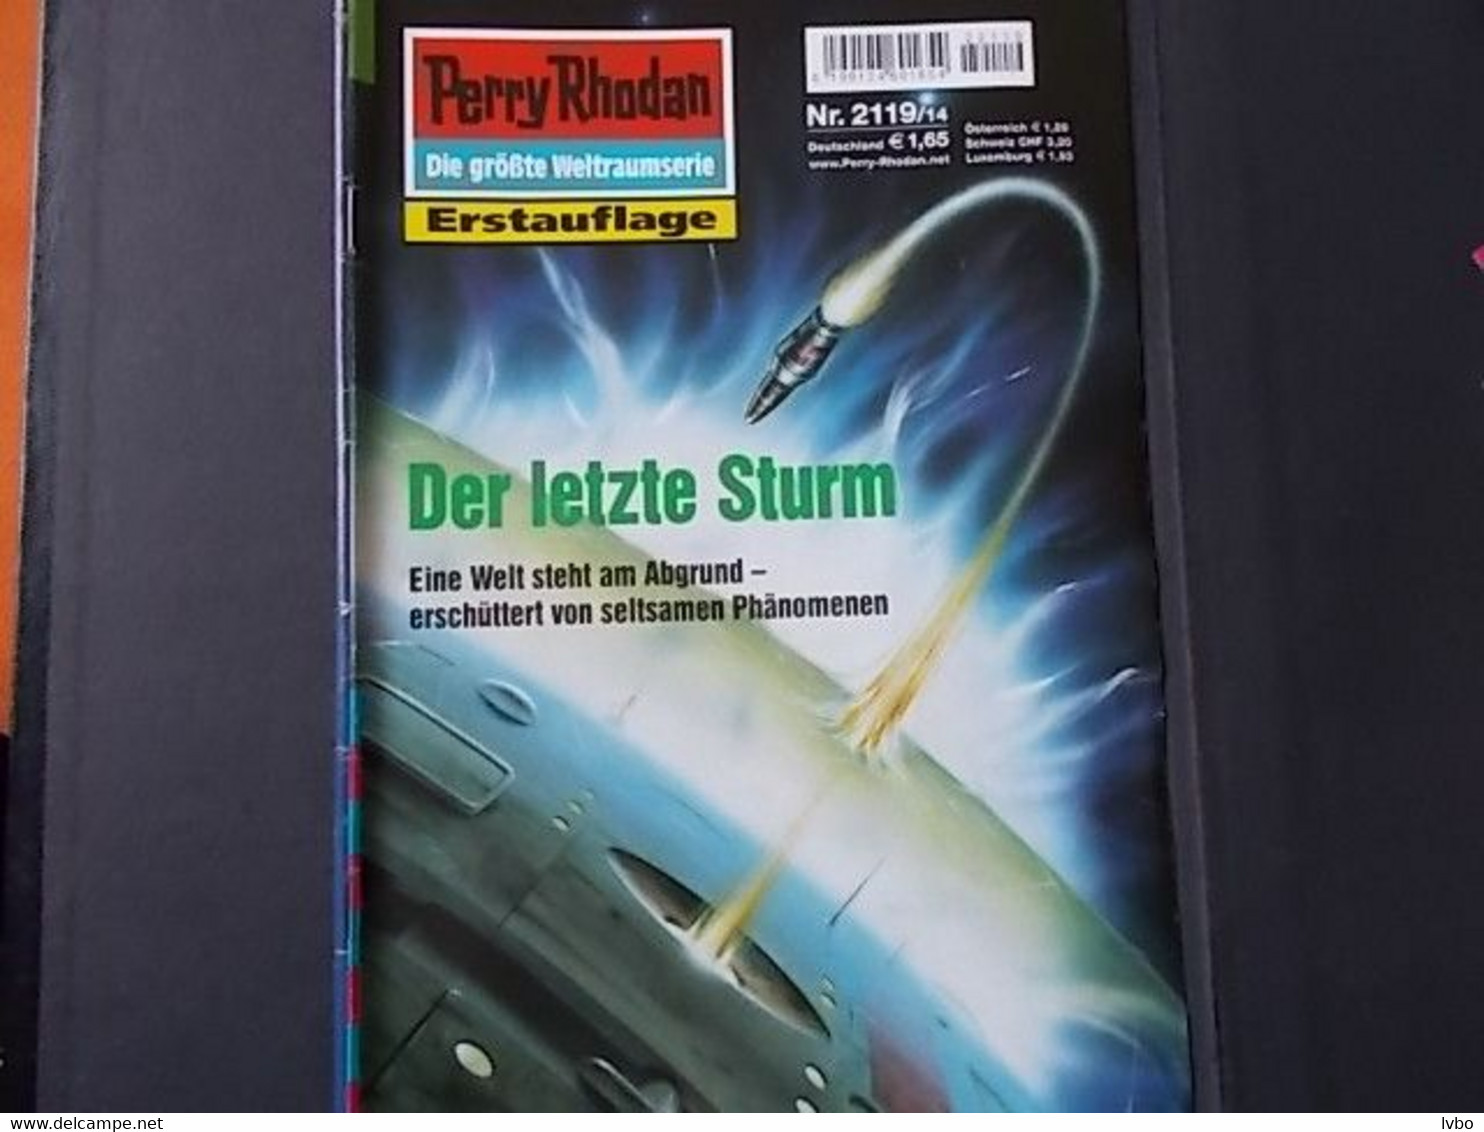 Perry Rhodan Nr 2119 Erstauflage Der Letzte Sturm - Science Fiction